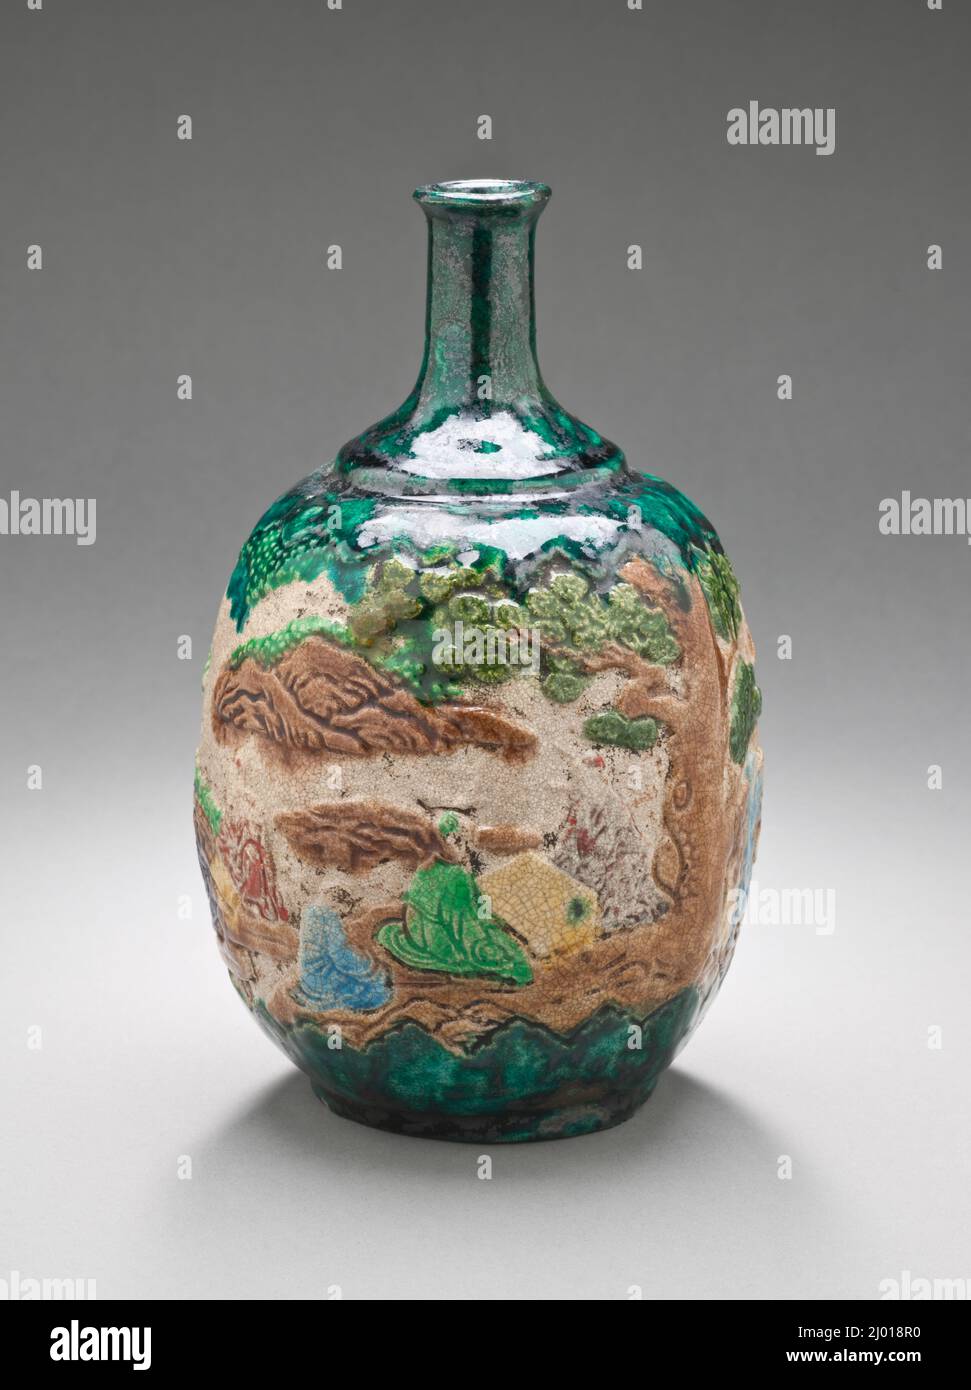 Botella de Sake con diseño de inmortales Daoístas y un Kirin en un paisaje. Japón, período Edo (1615-1868), siglo 18th. Cerámica. Cerámica de Chennai (Shido); loza con esmalte transparente y esmaltes de colores Foto de stock